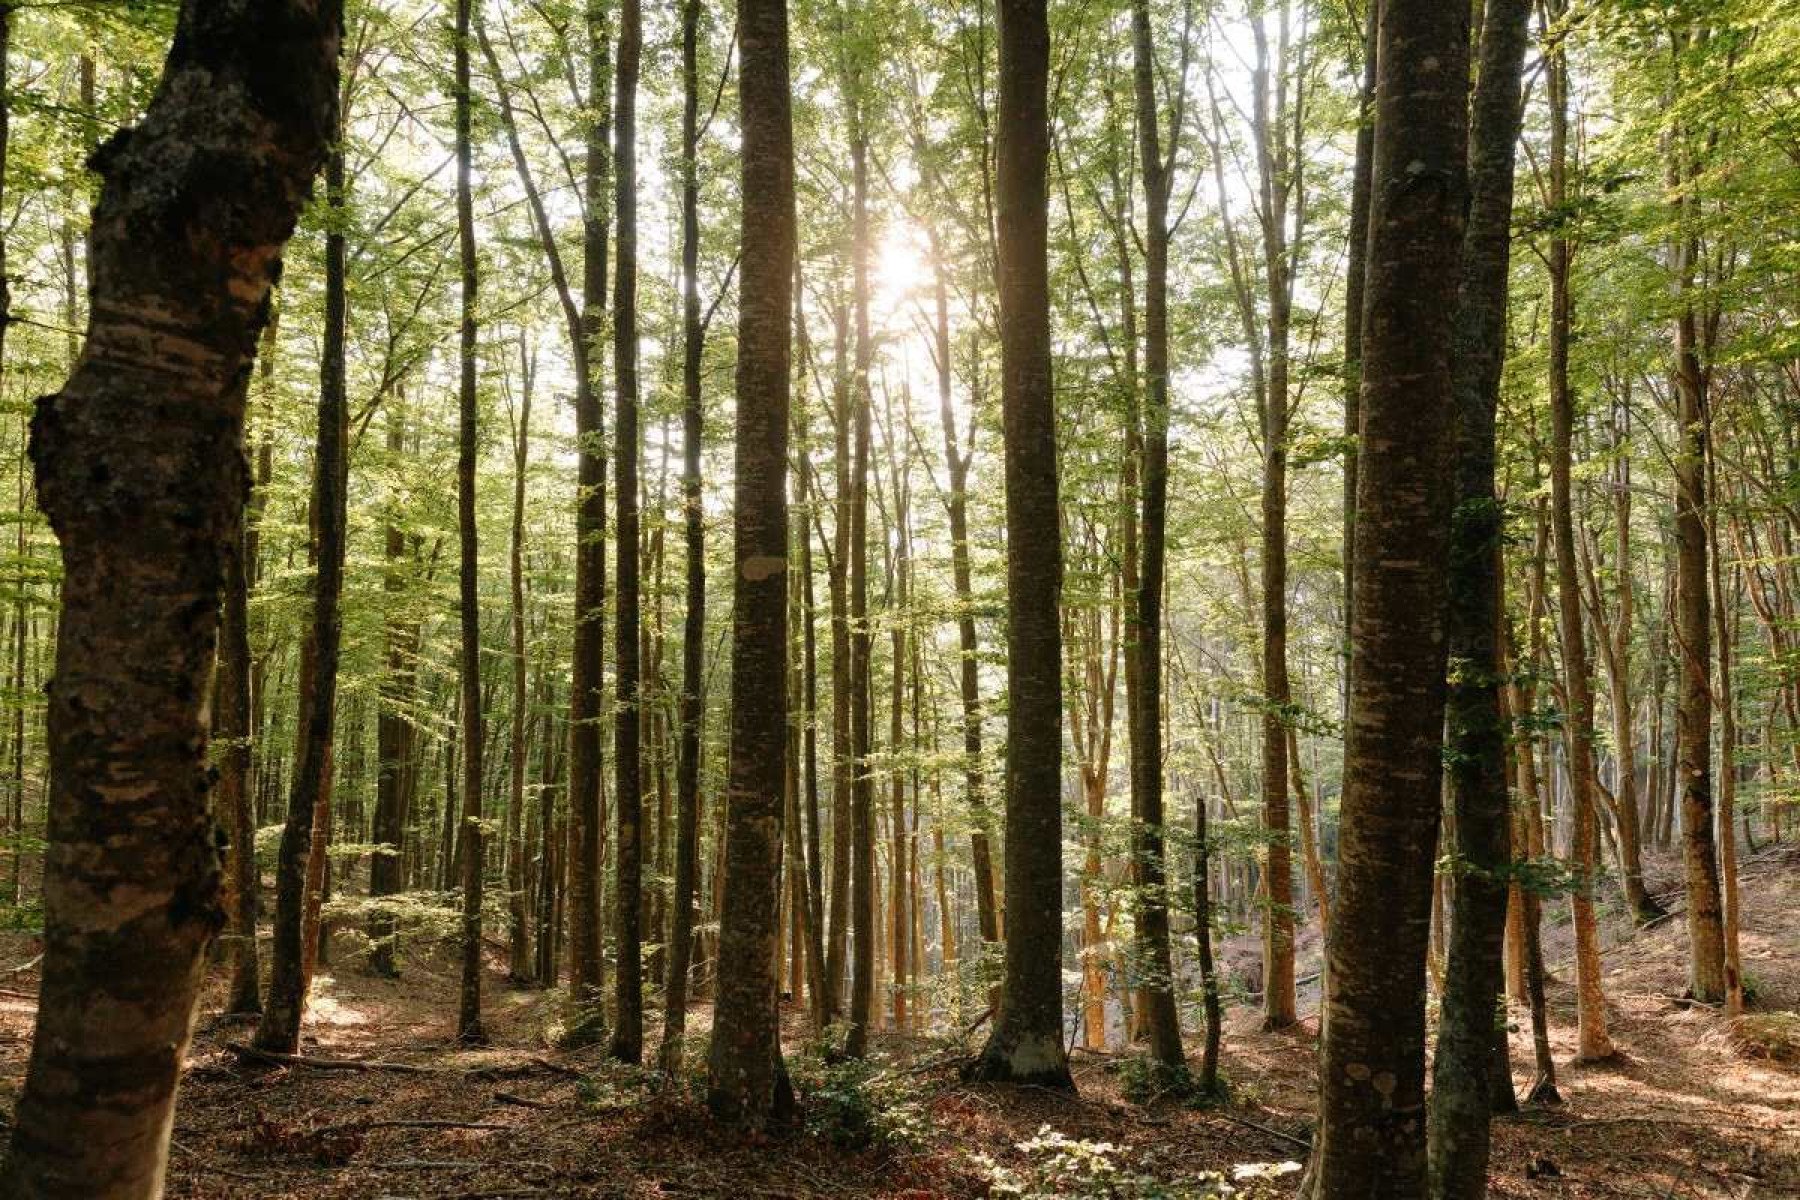 Crise climática deixa as árvores mais lentas, mostra estudo